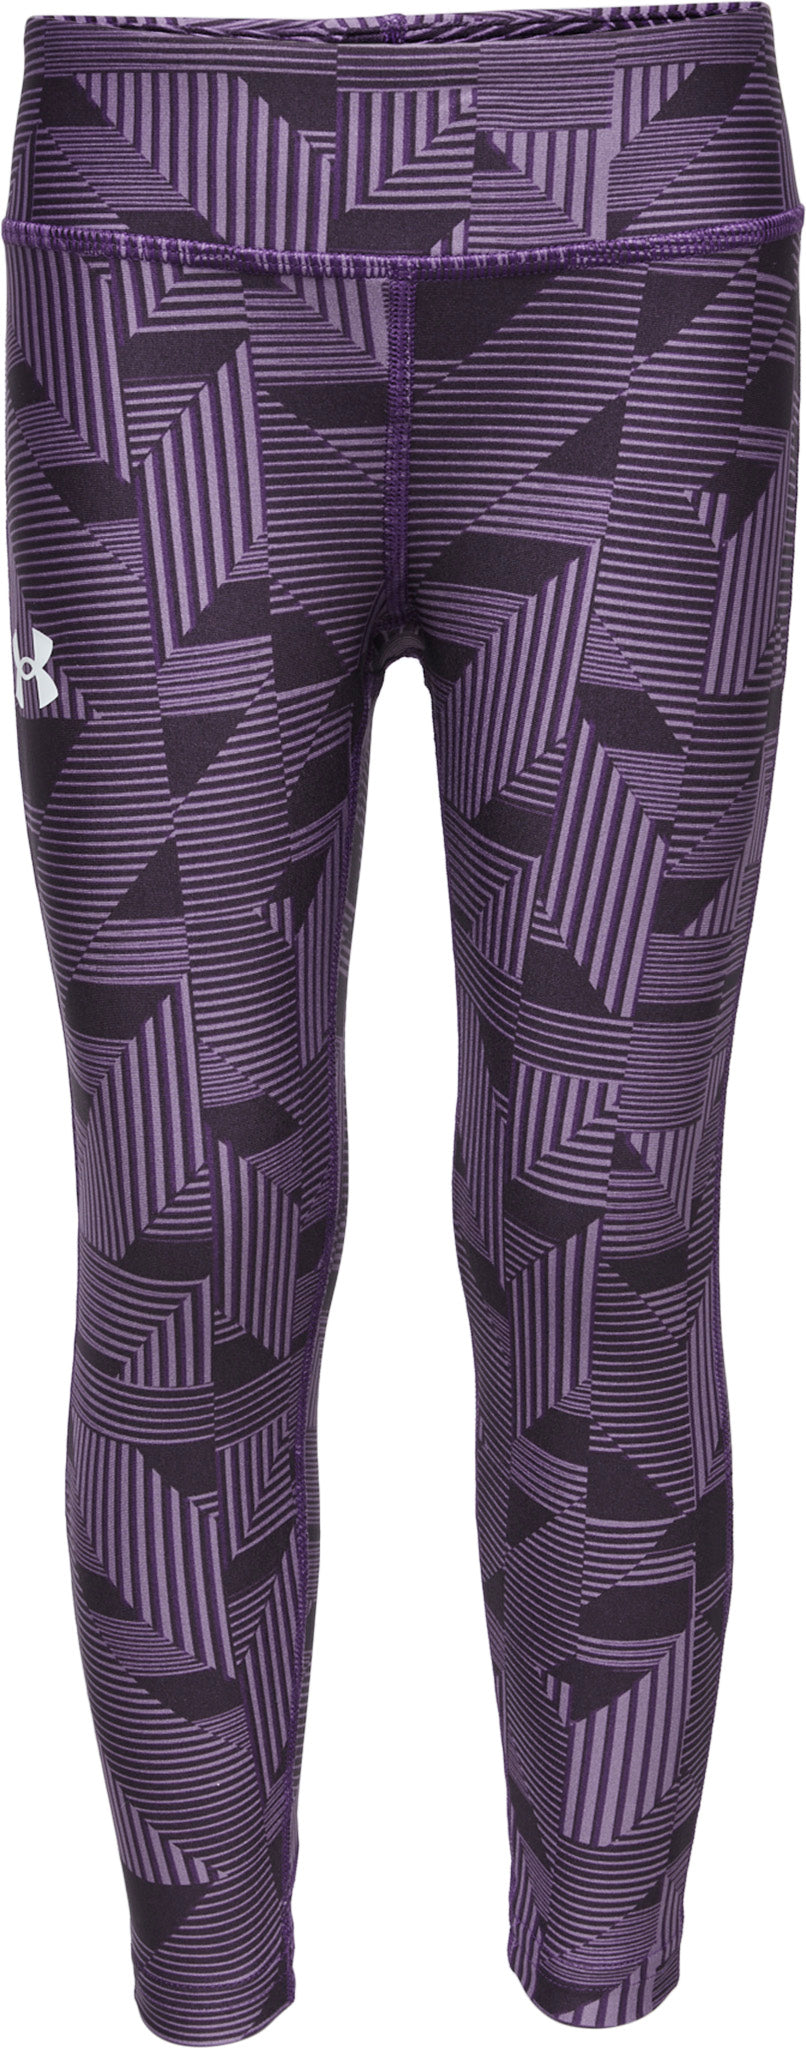 Under Armour Size XL Women's Leggings Purple Heat Gear Capri